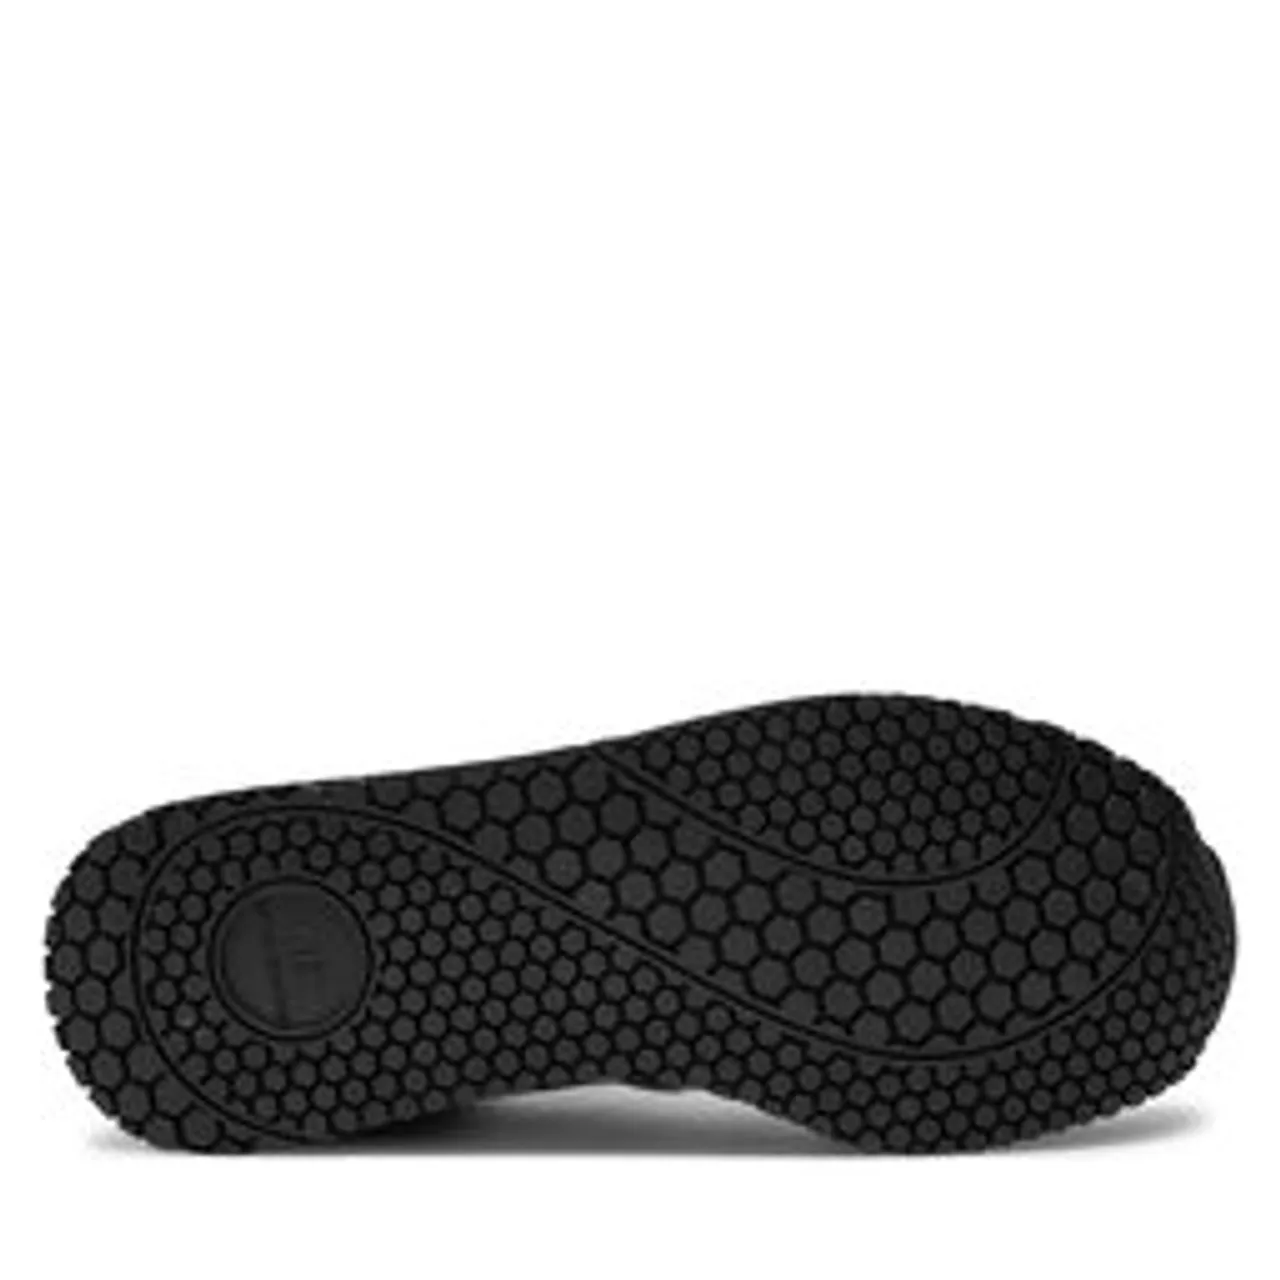 Sneakers Armani Exchange XUX017 XCC68 K489 Black/White